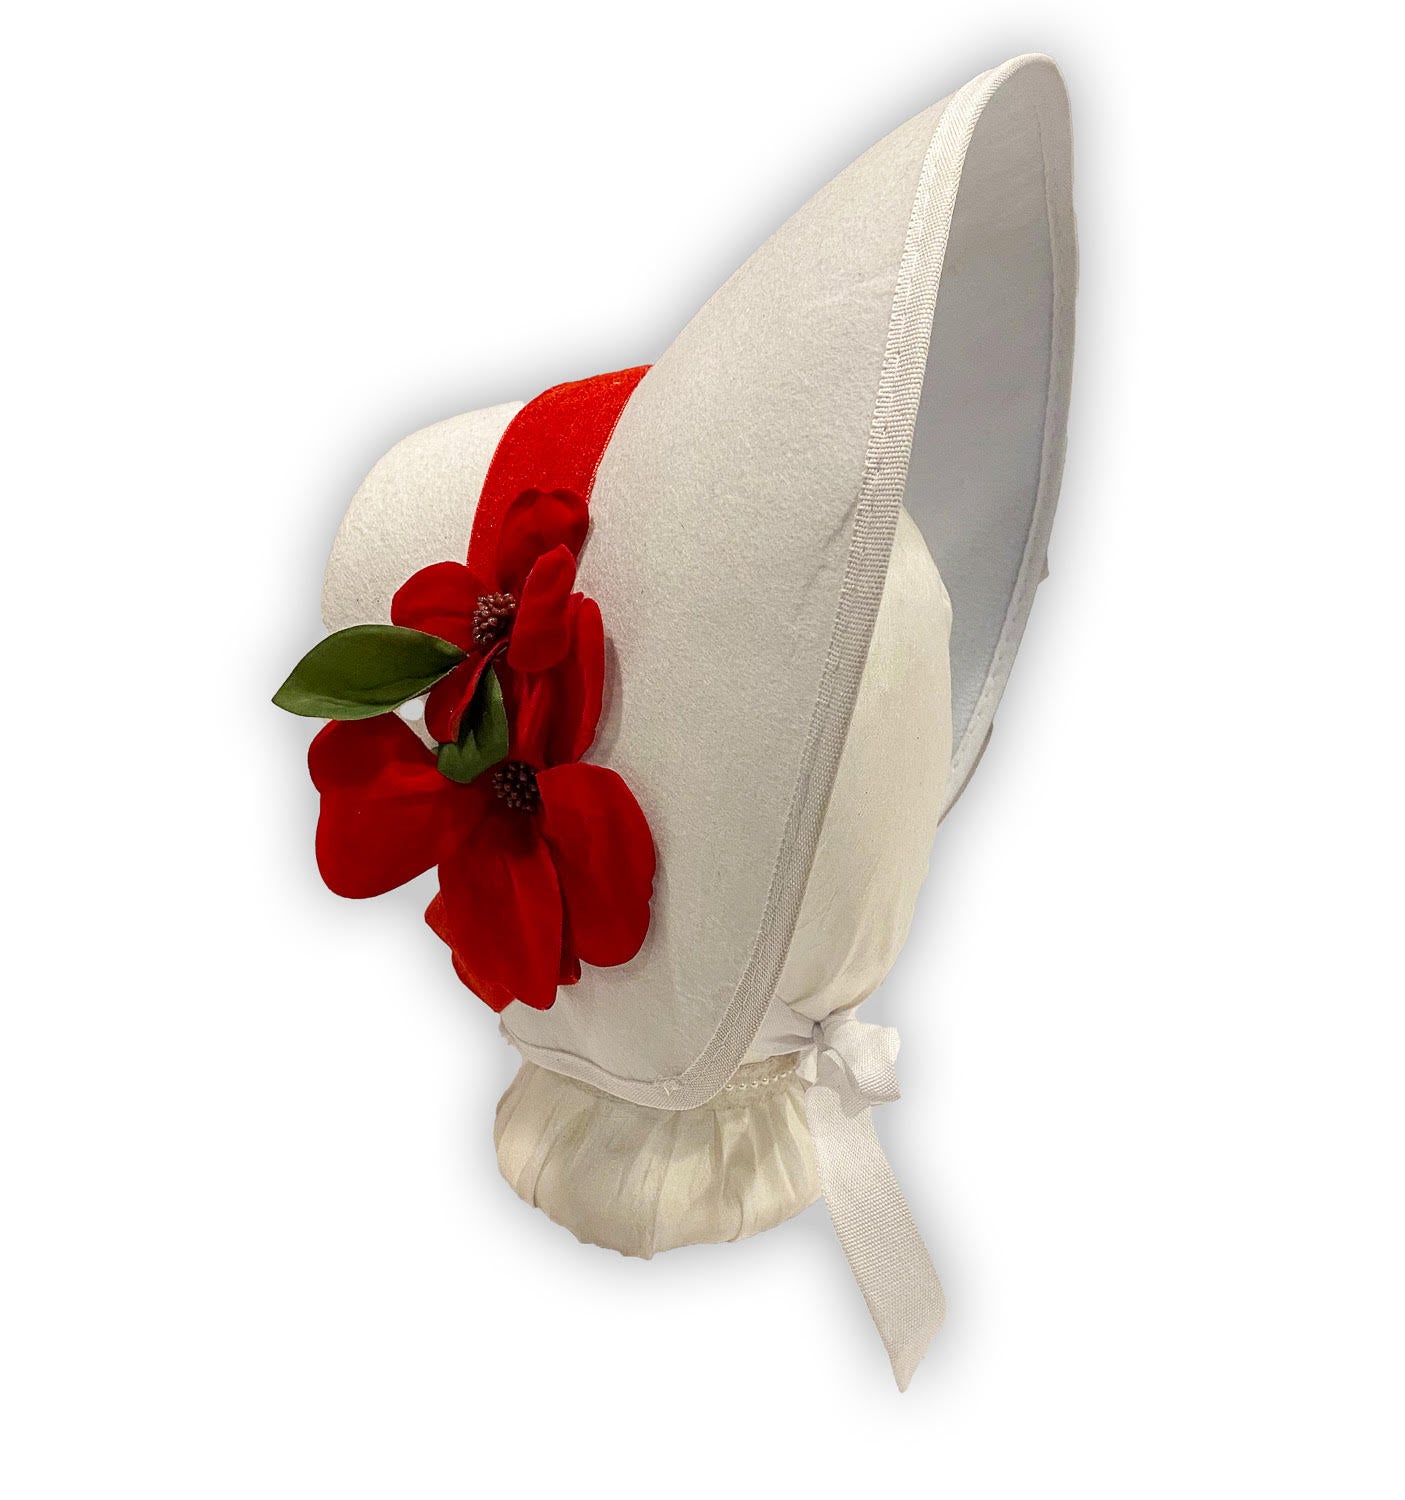 Plain Bronte: Late Regency, Early Victorian Felt Bonnet, White